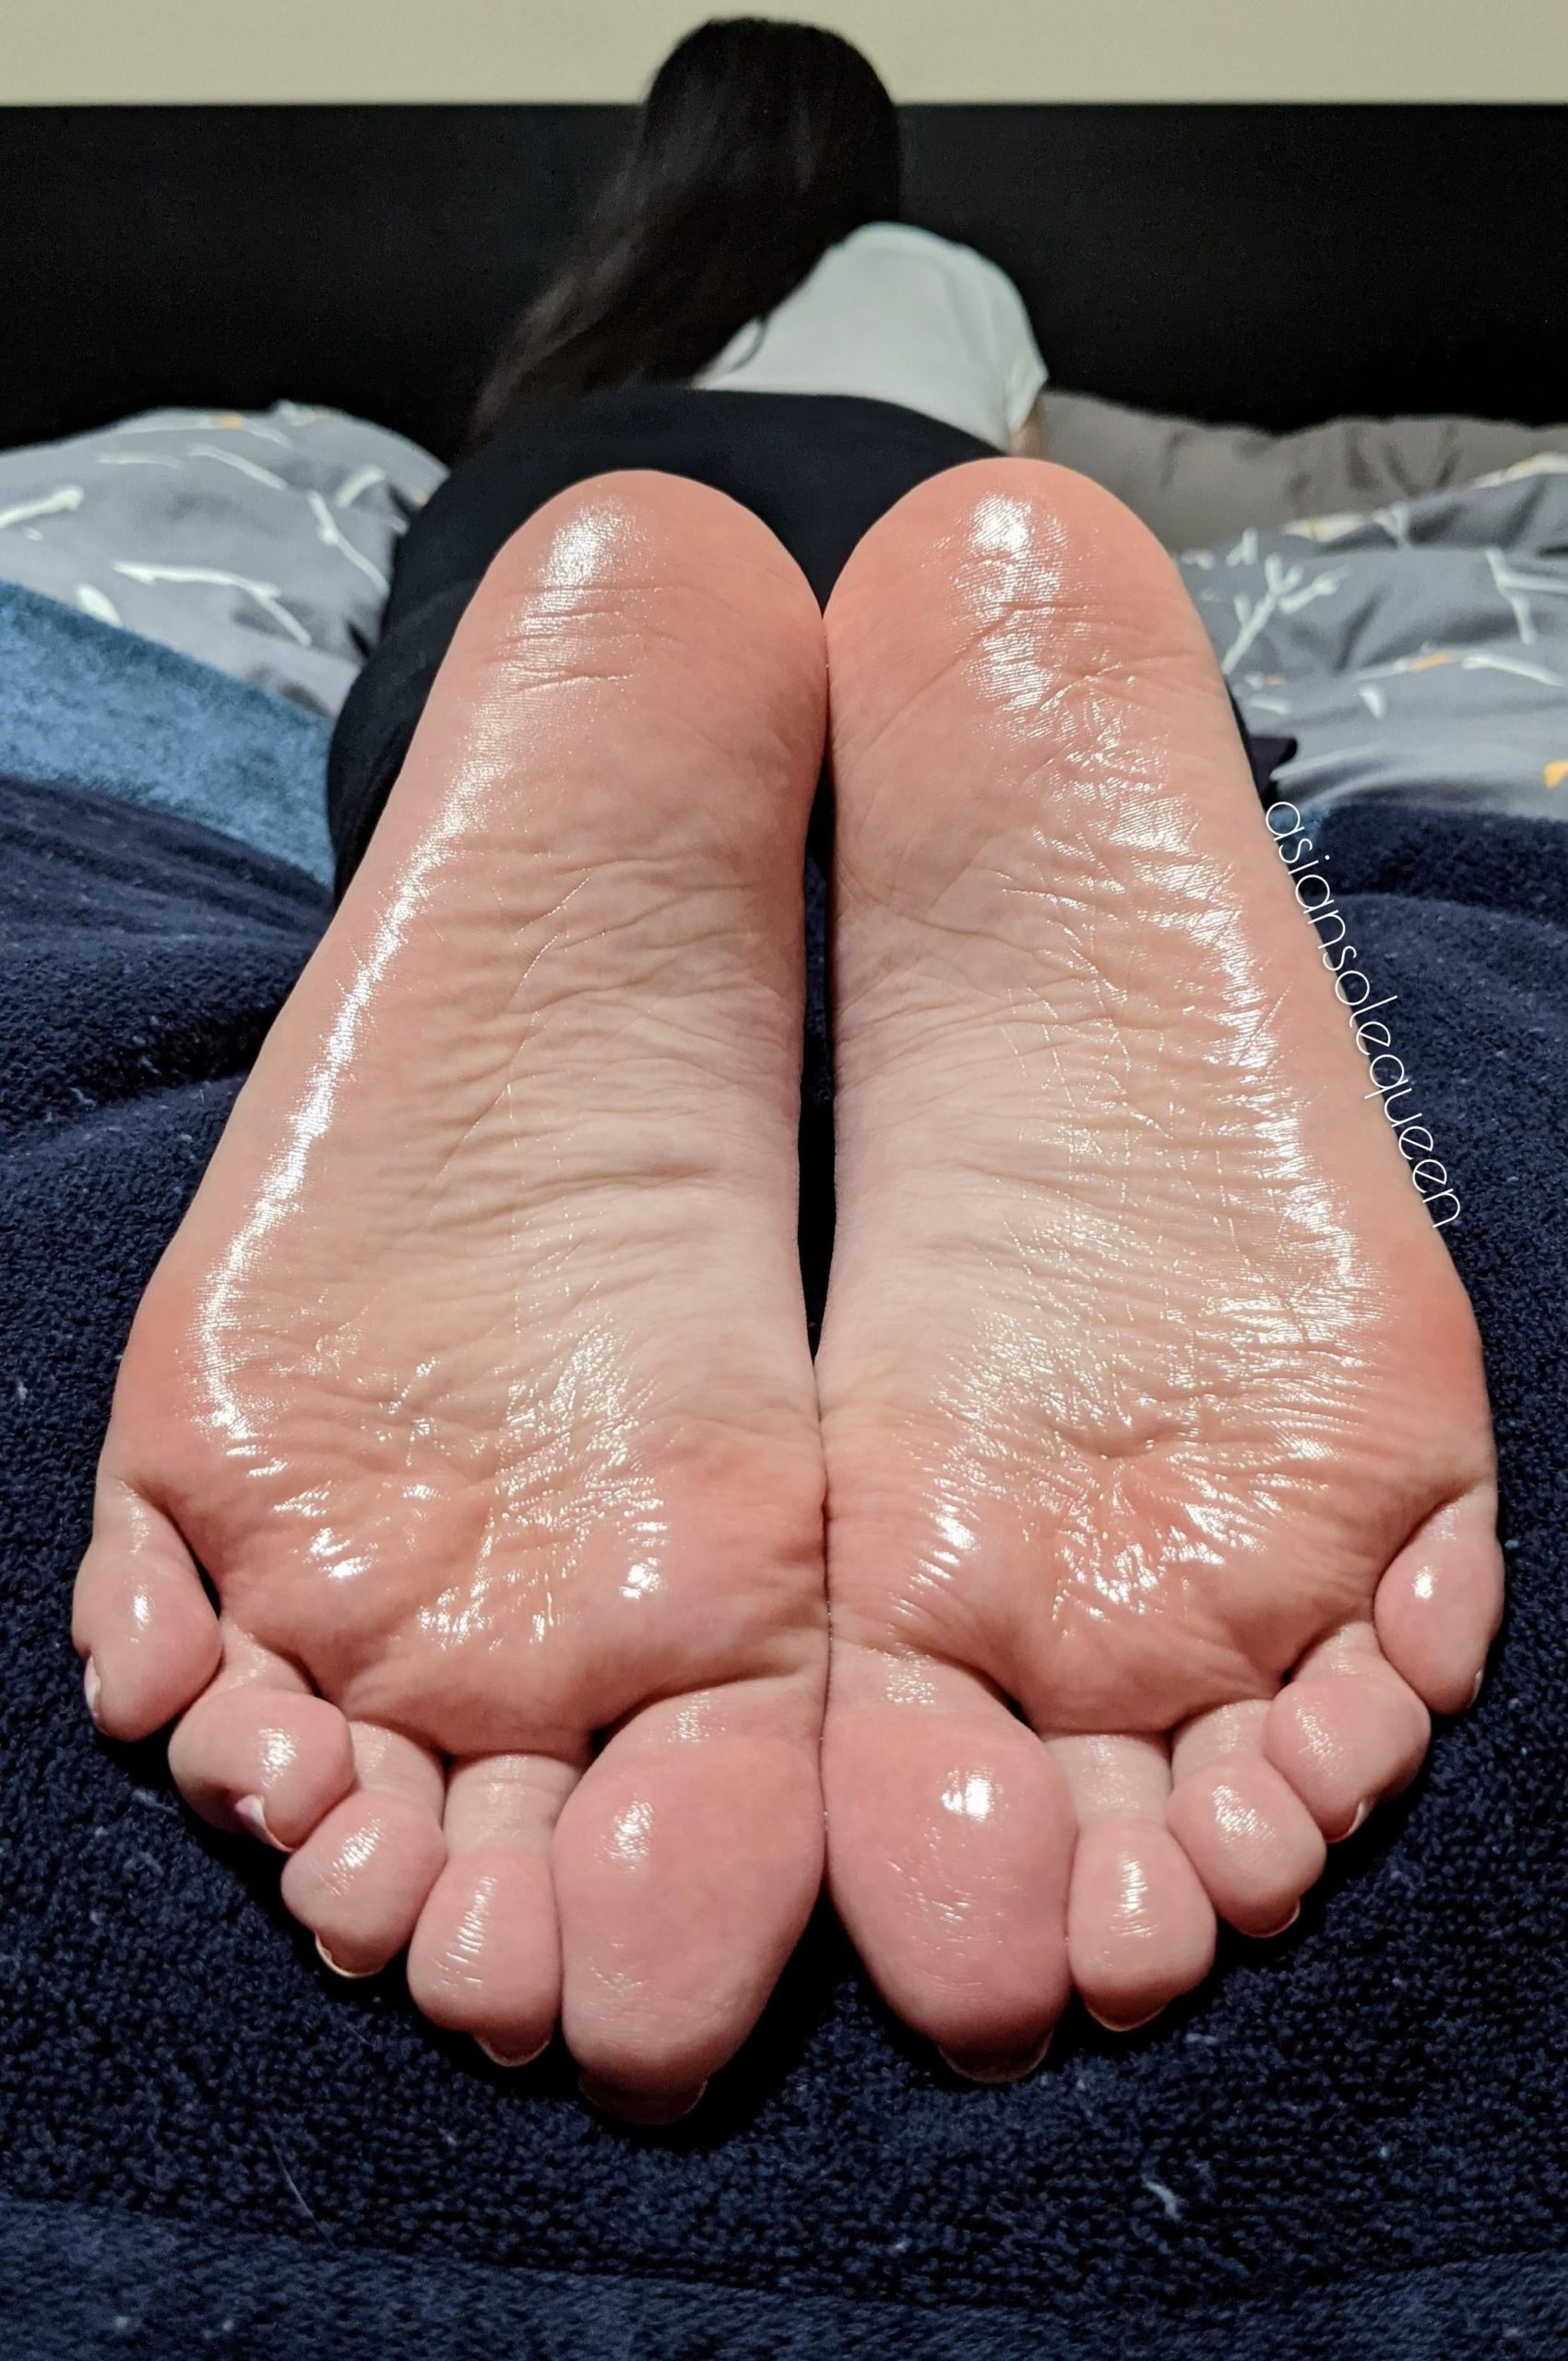 cum on soles of feet